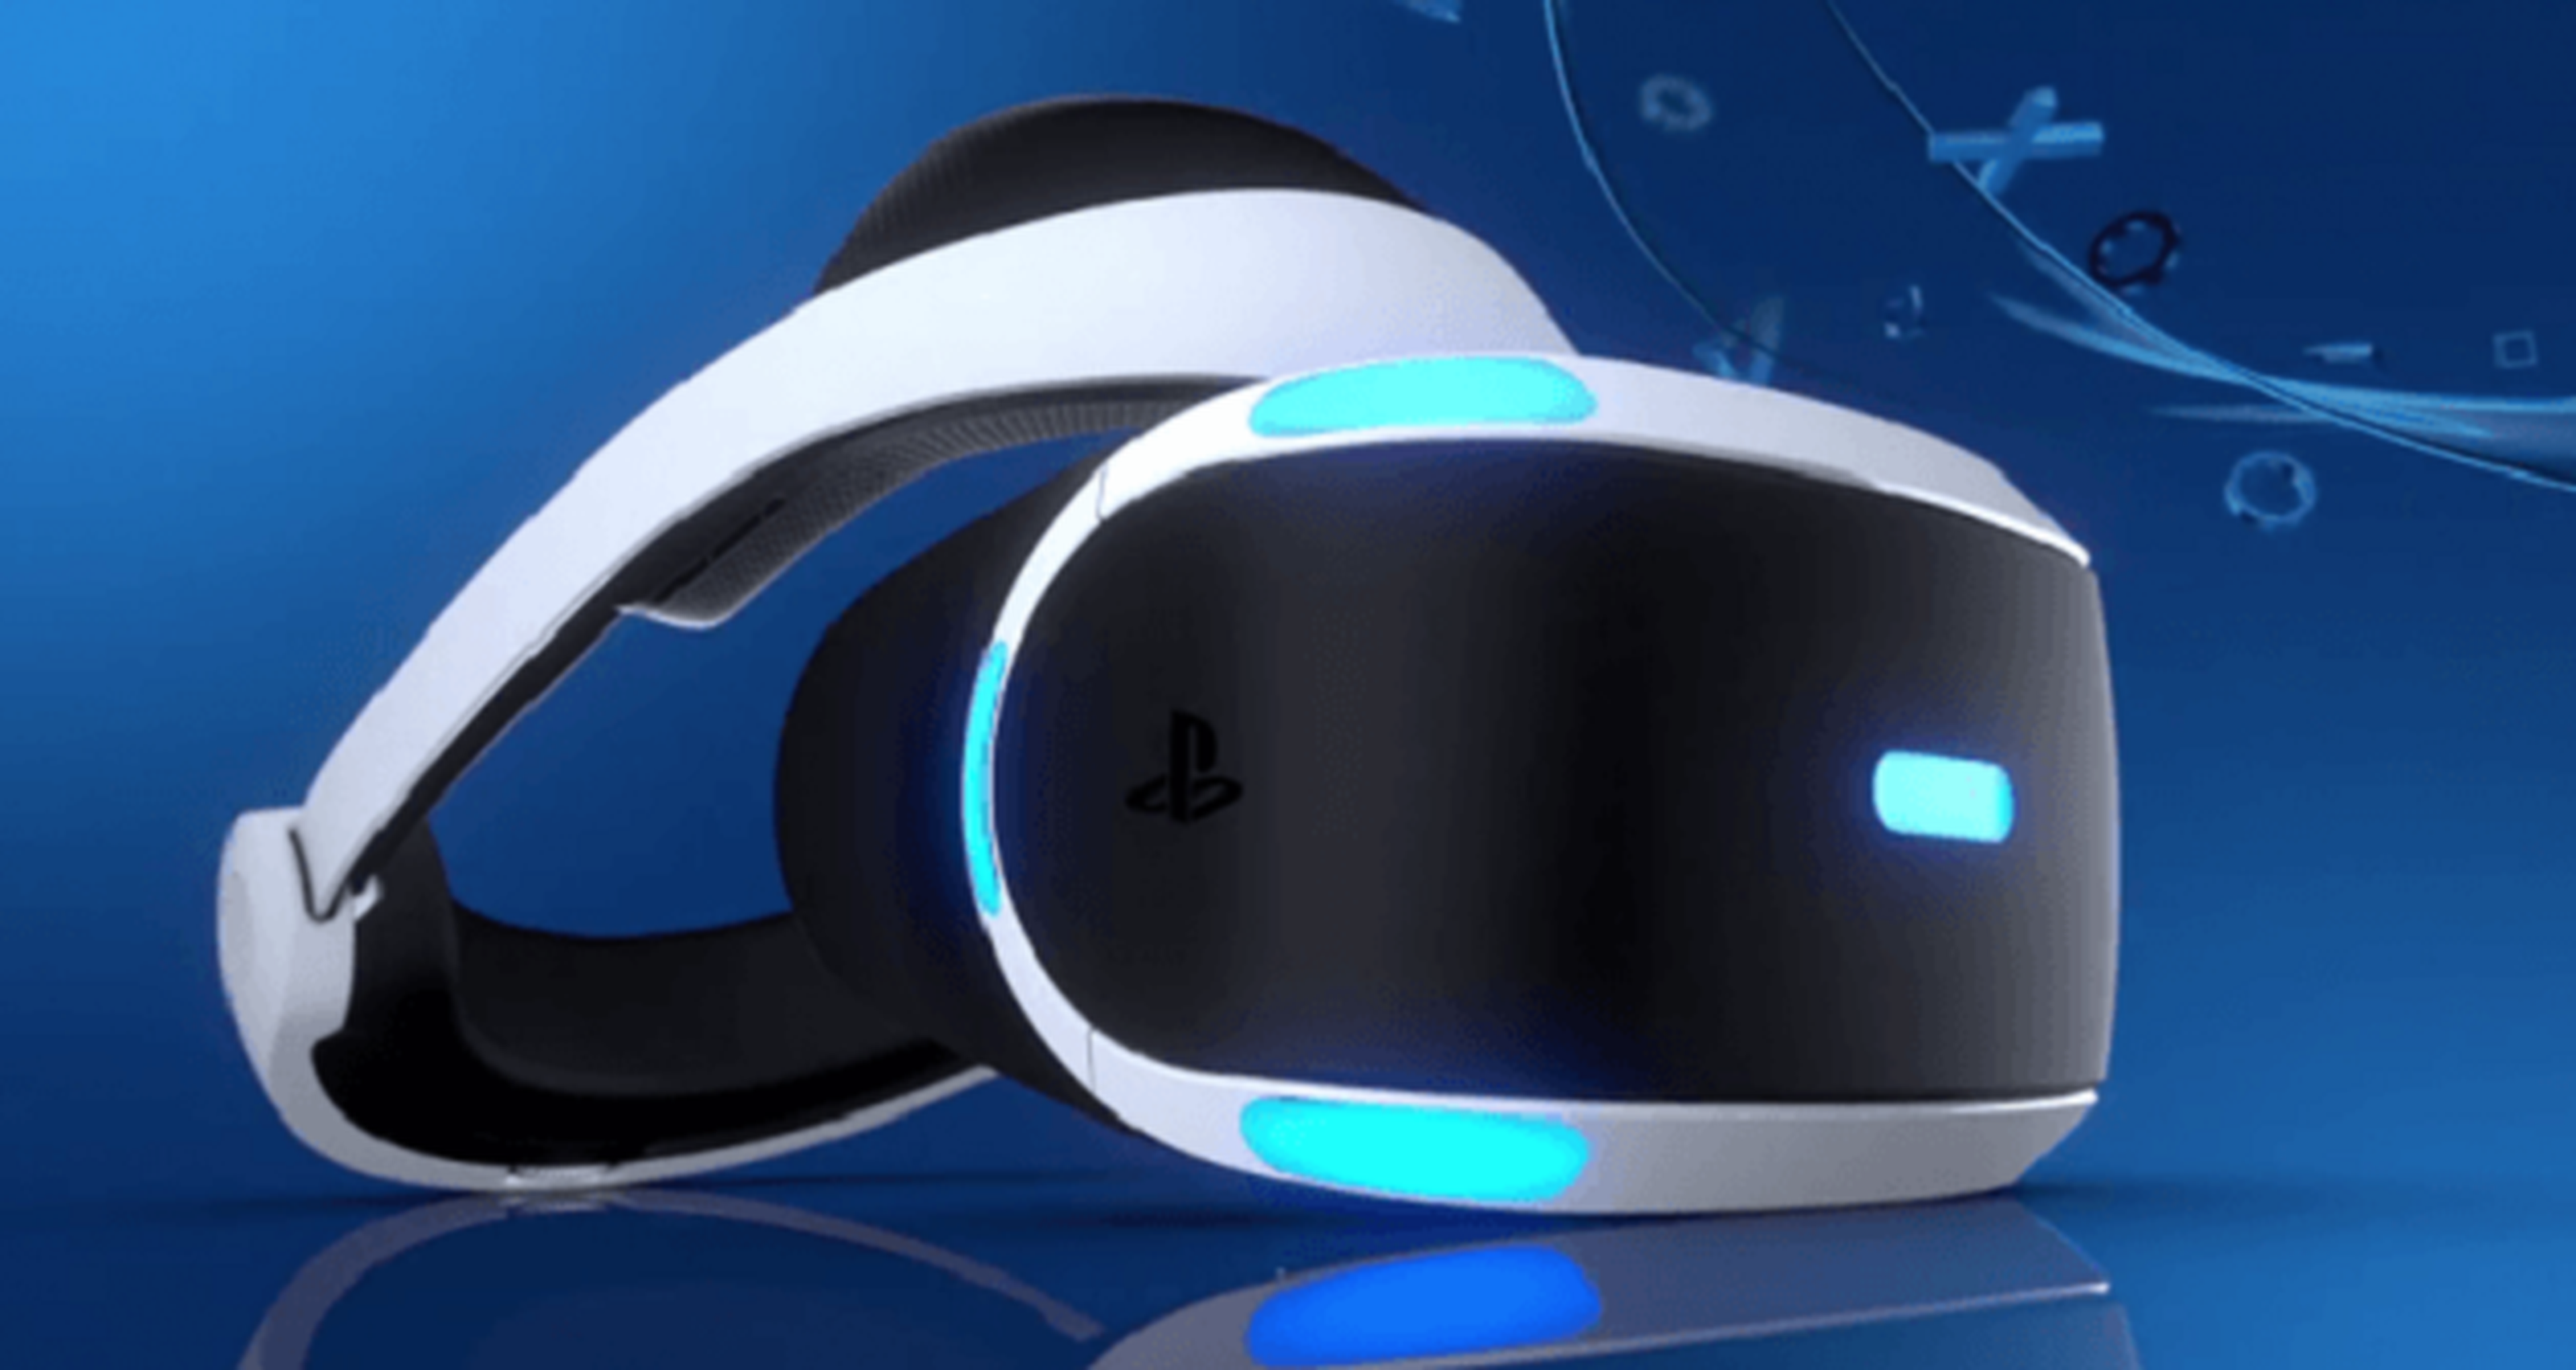 PlayStation VR, precio según Michael Pachter